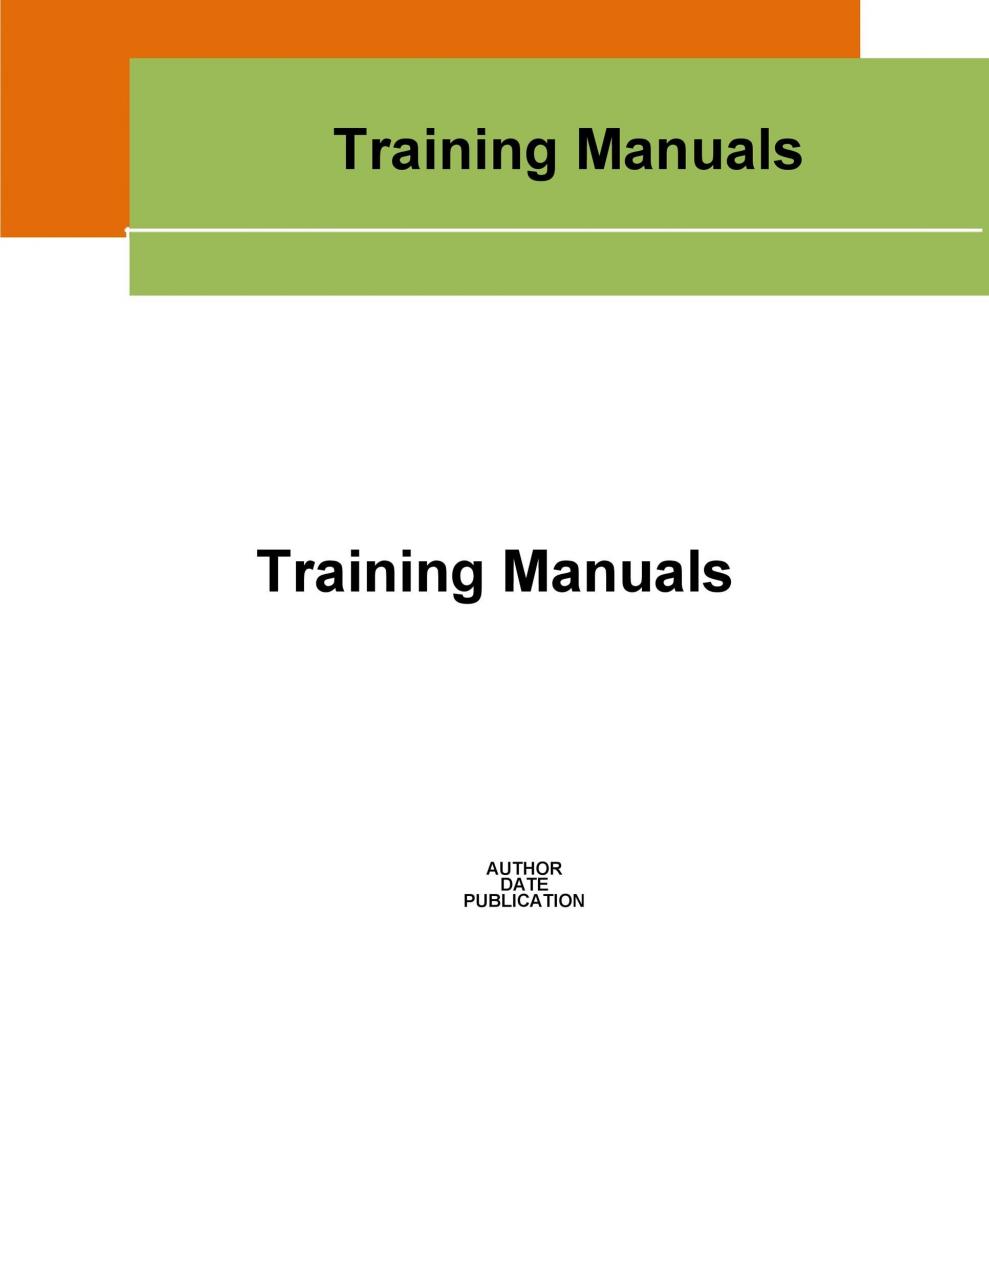 plantilla de manual de entrenamiento gratis 16